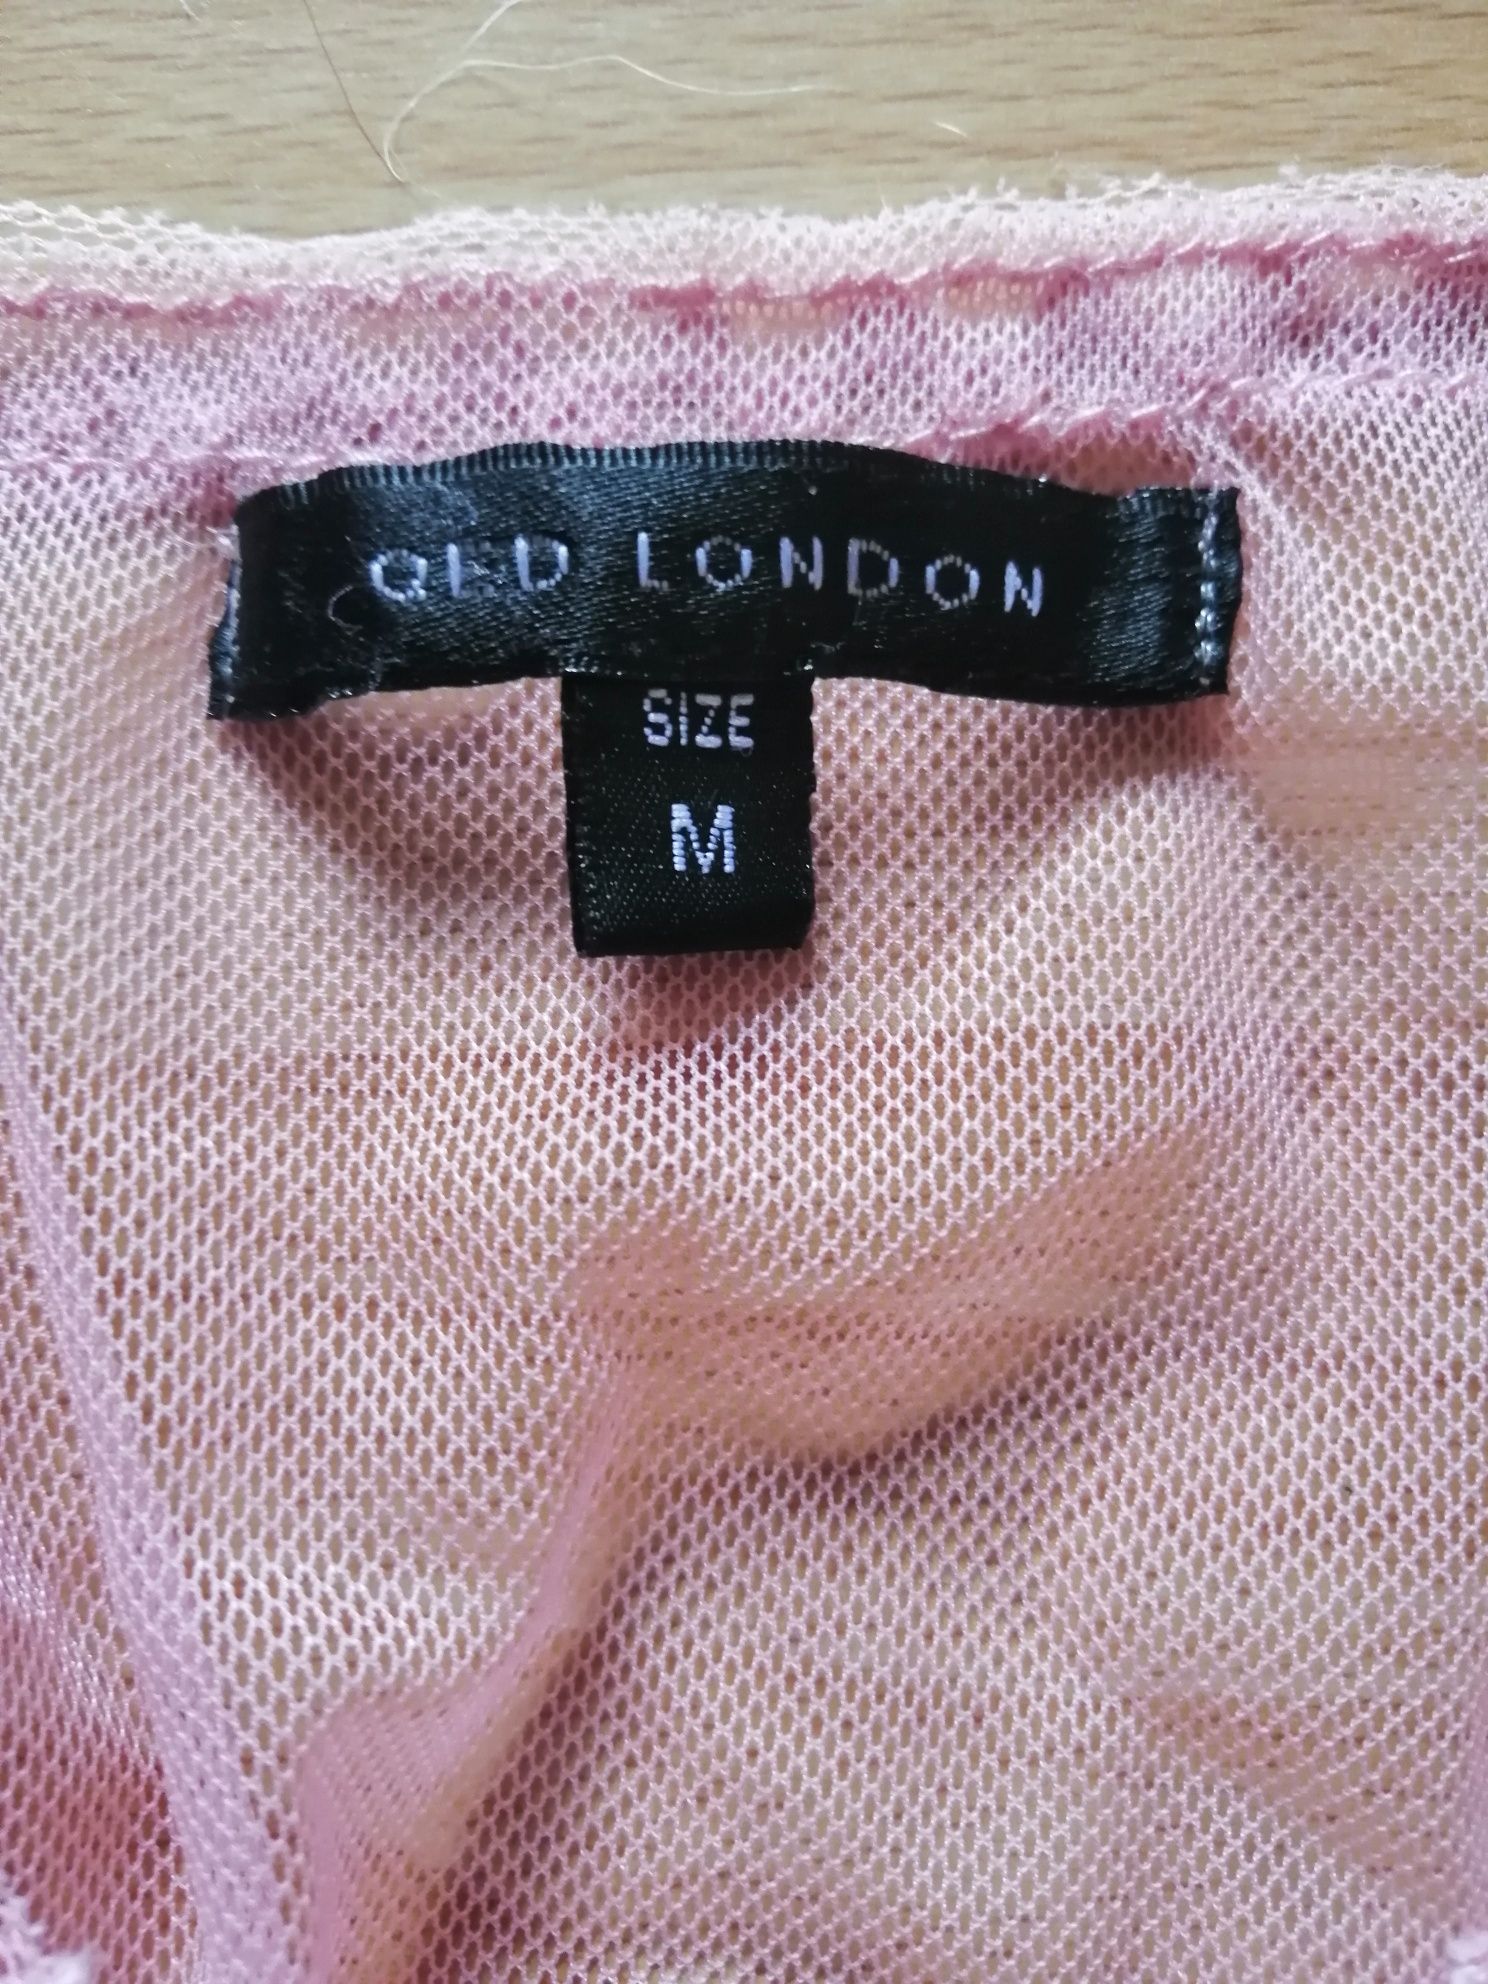 Bluzeczka siateczkowa M Qed London